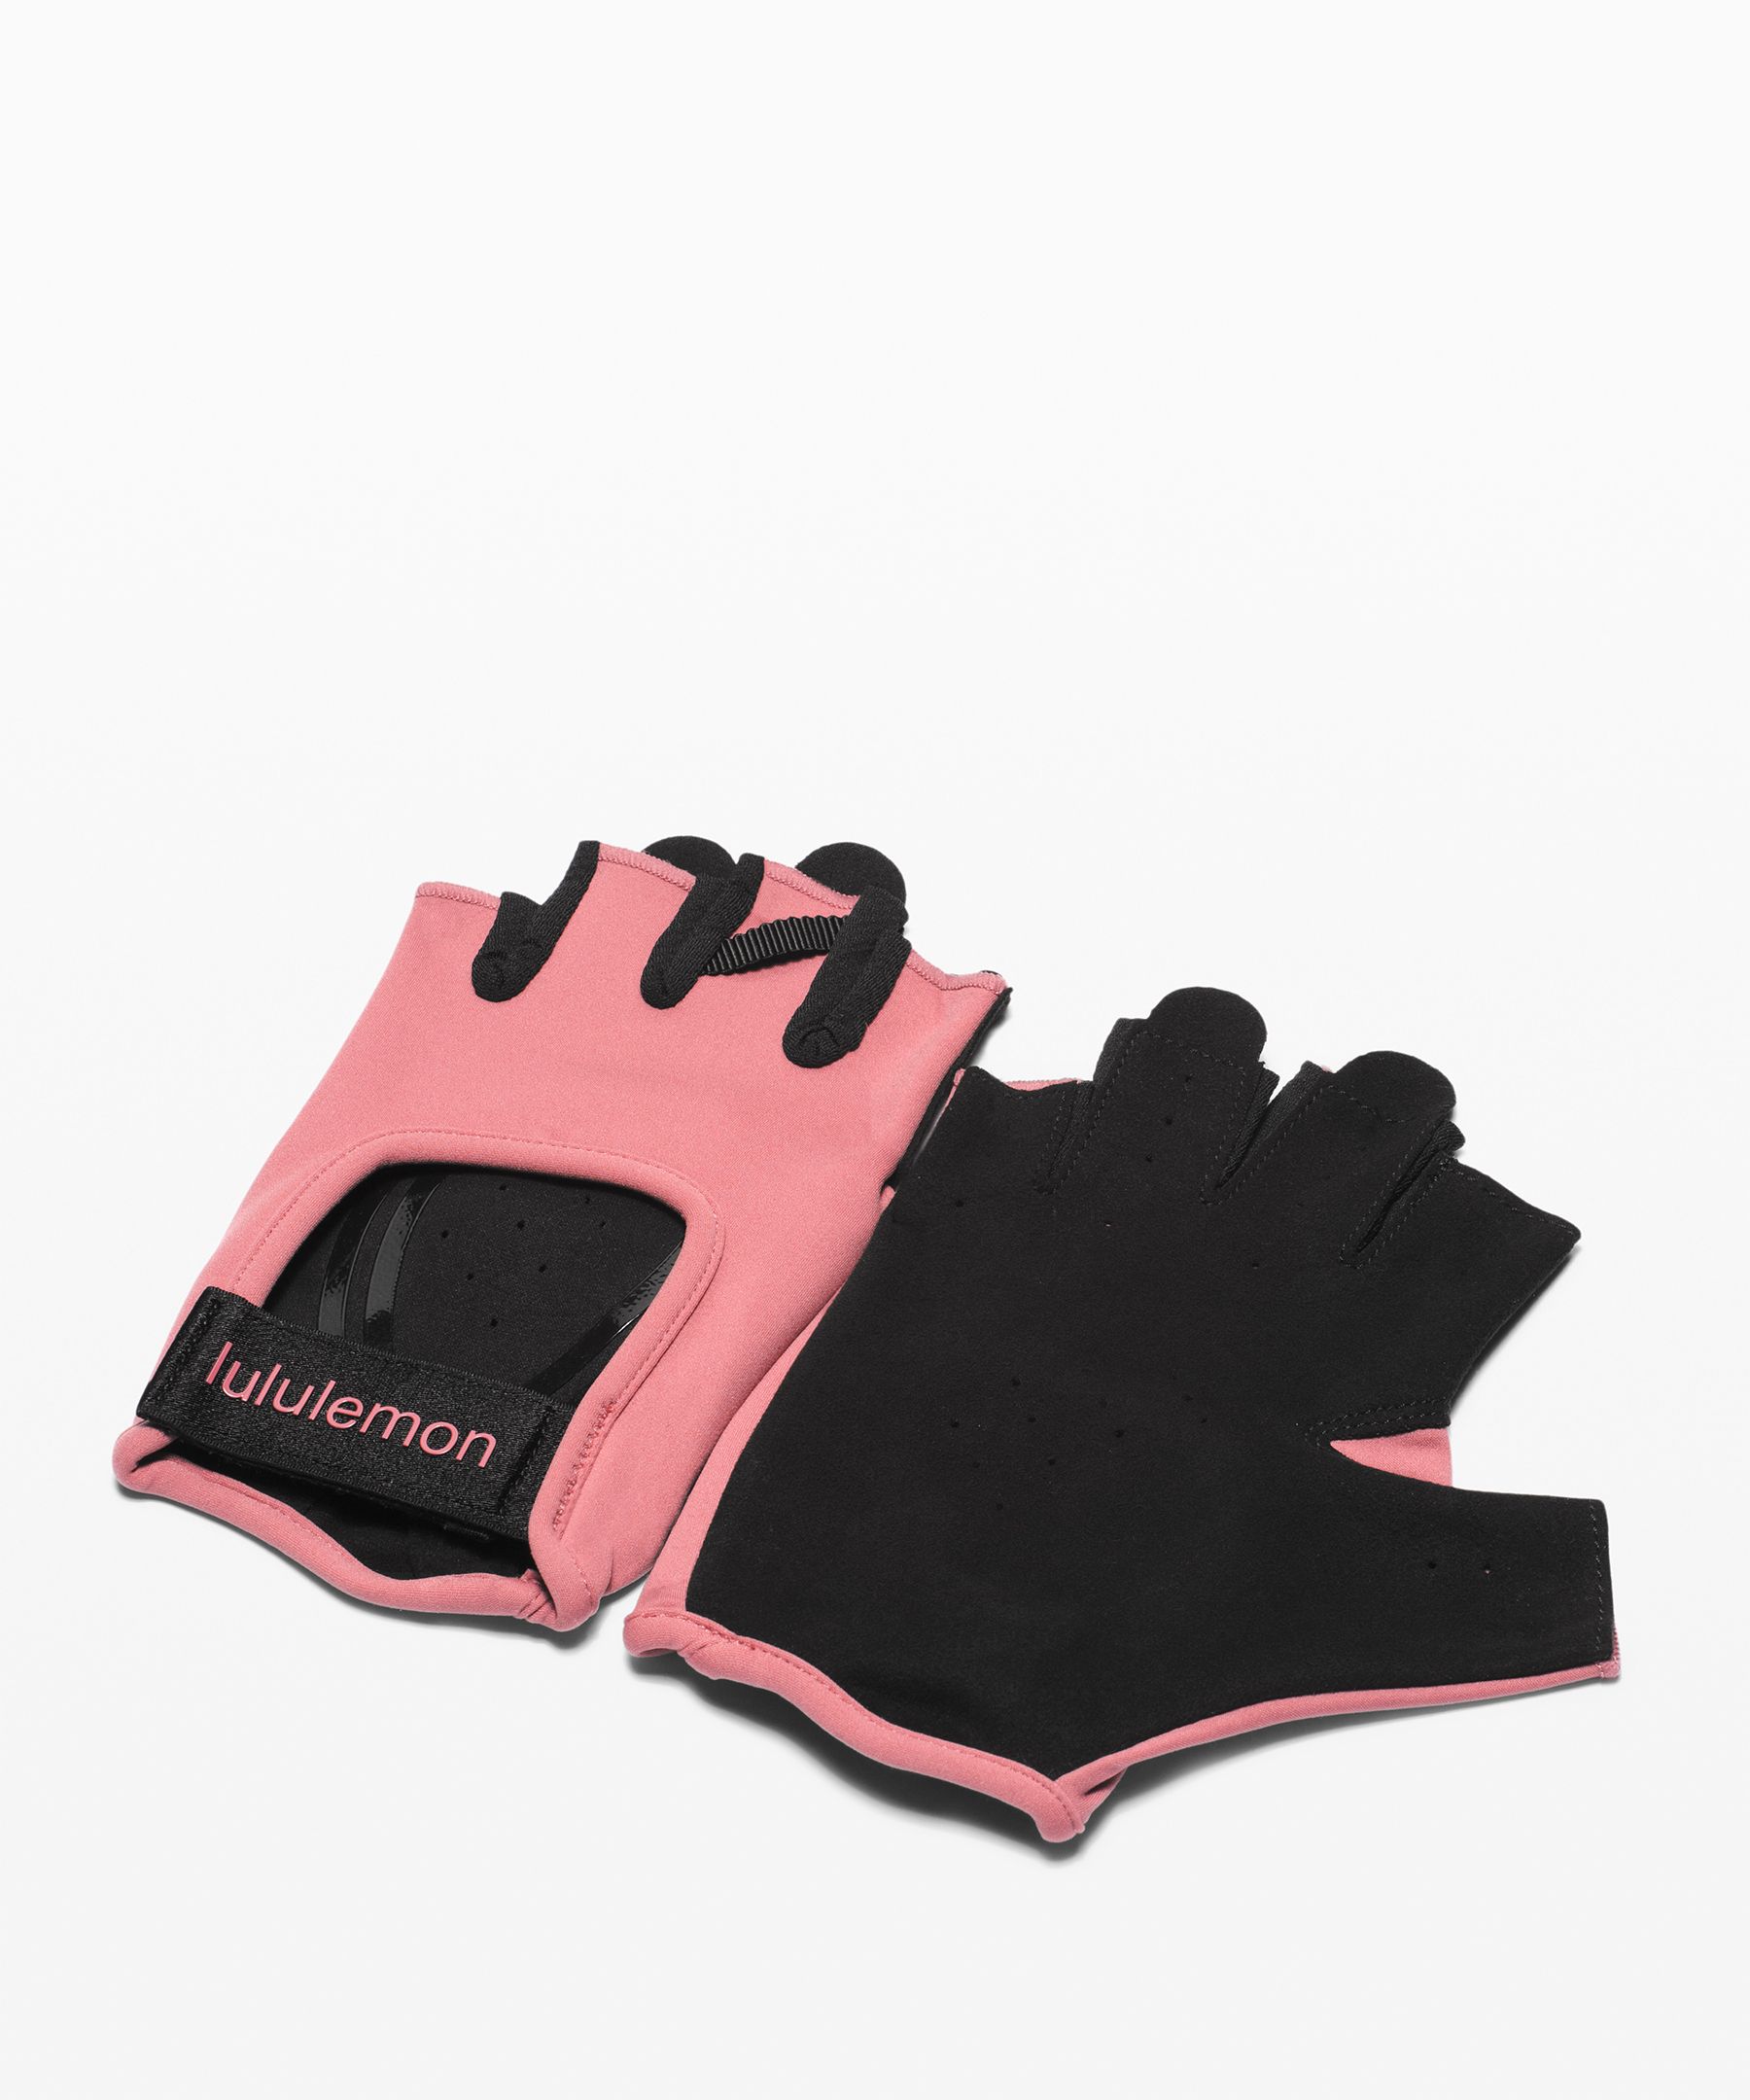 lululemon women's gloves